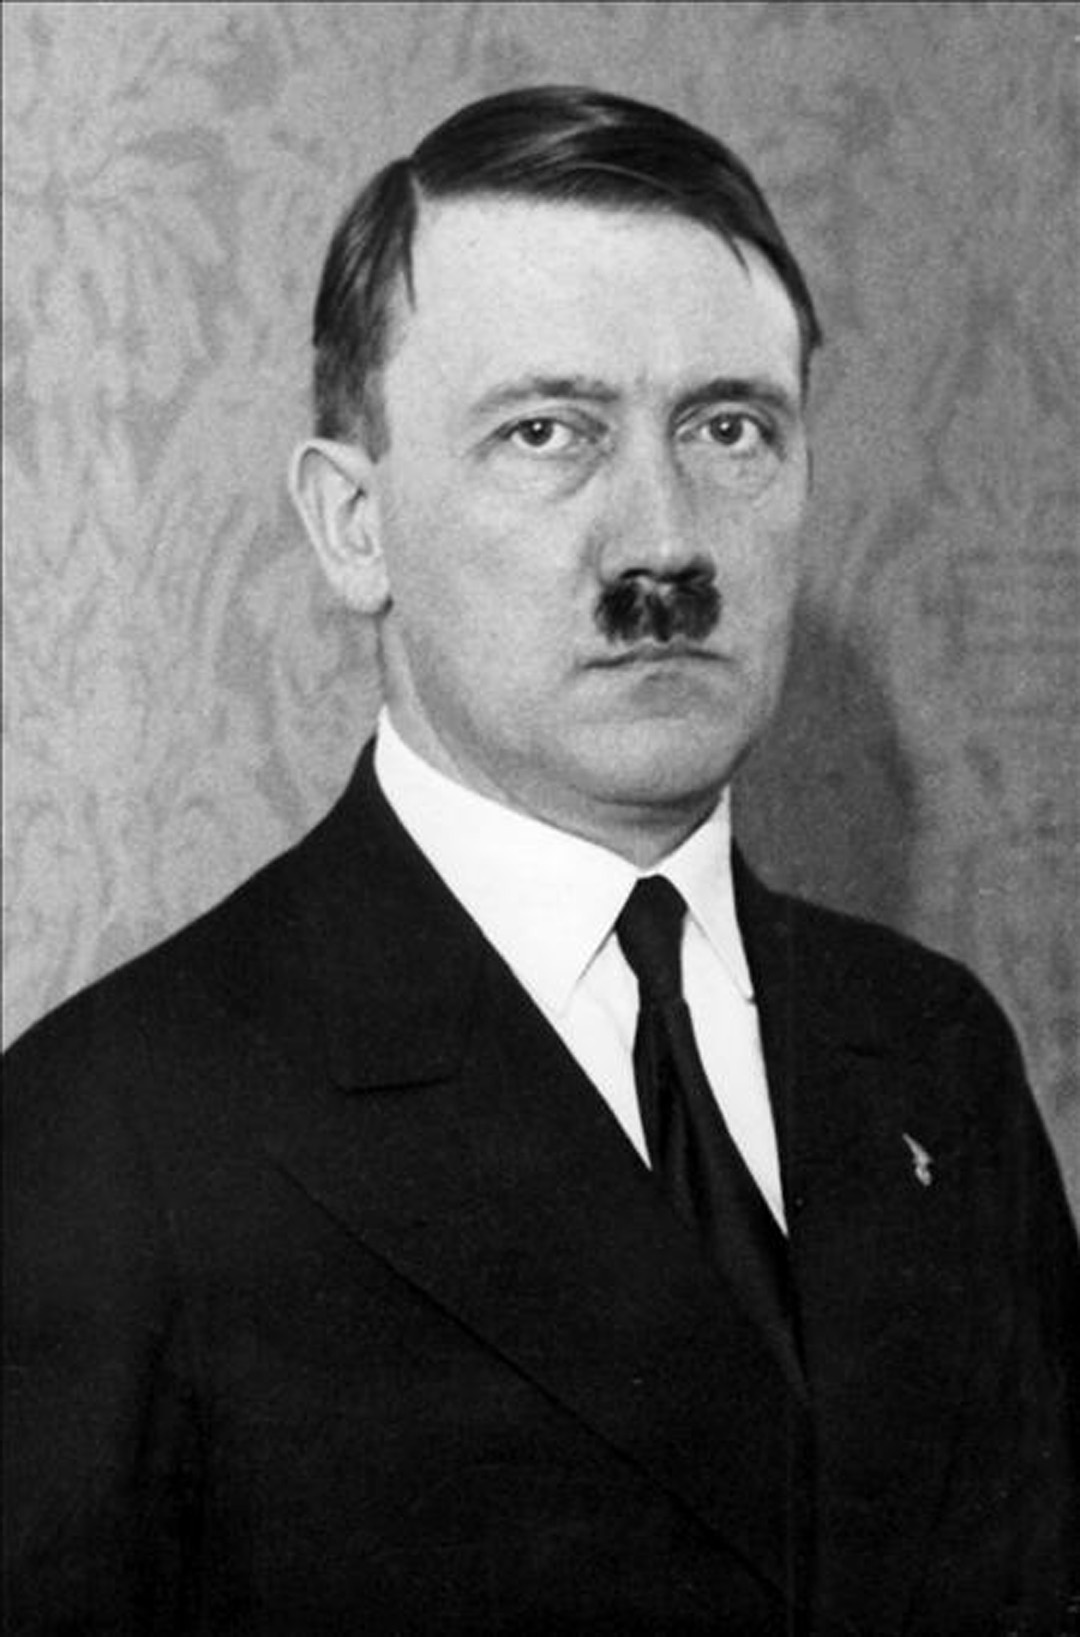 Adof Hitler